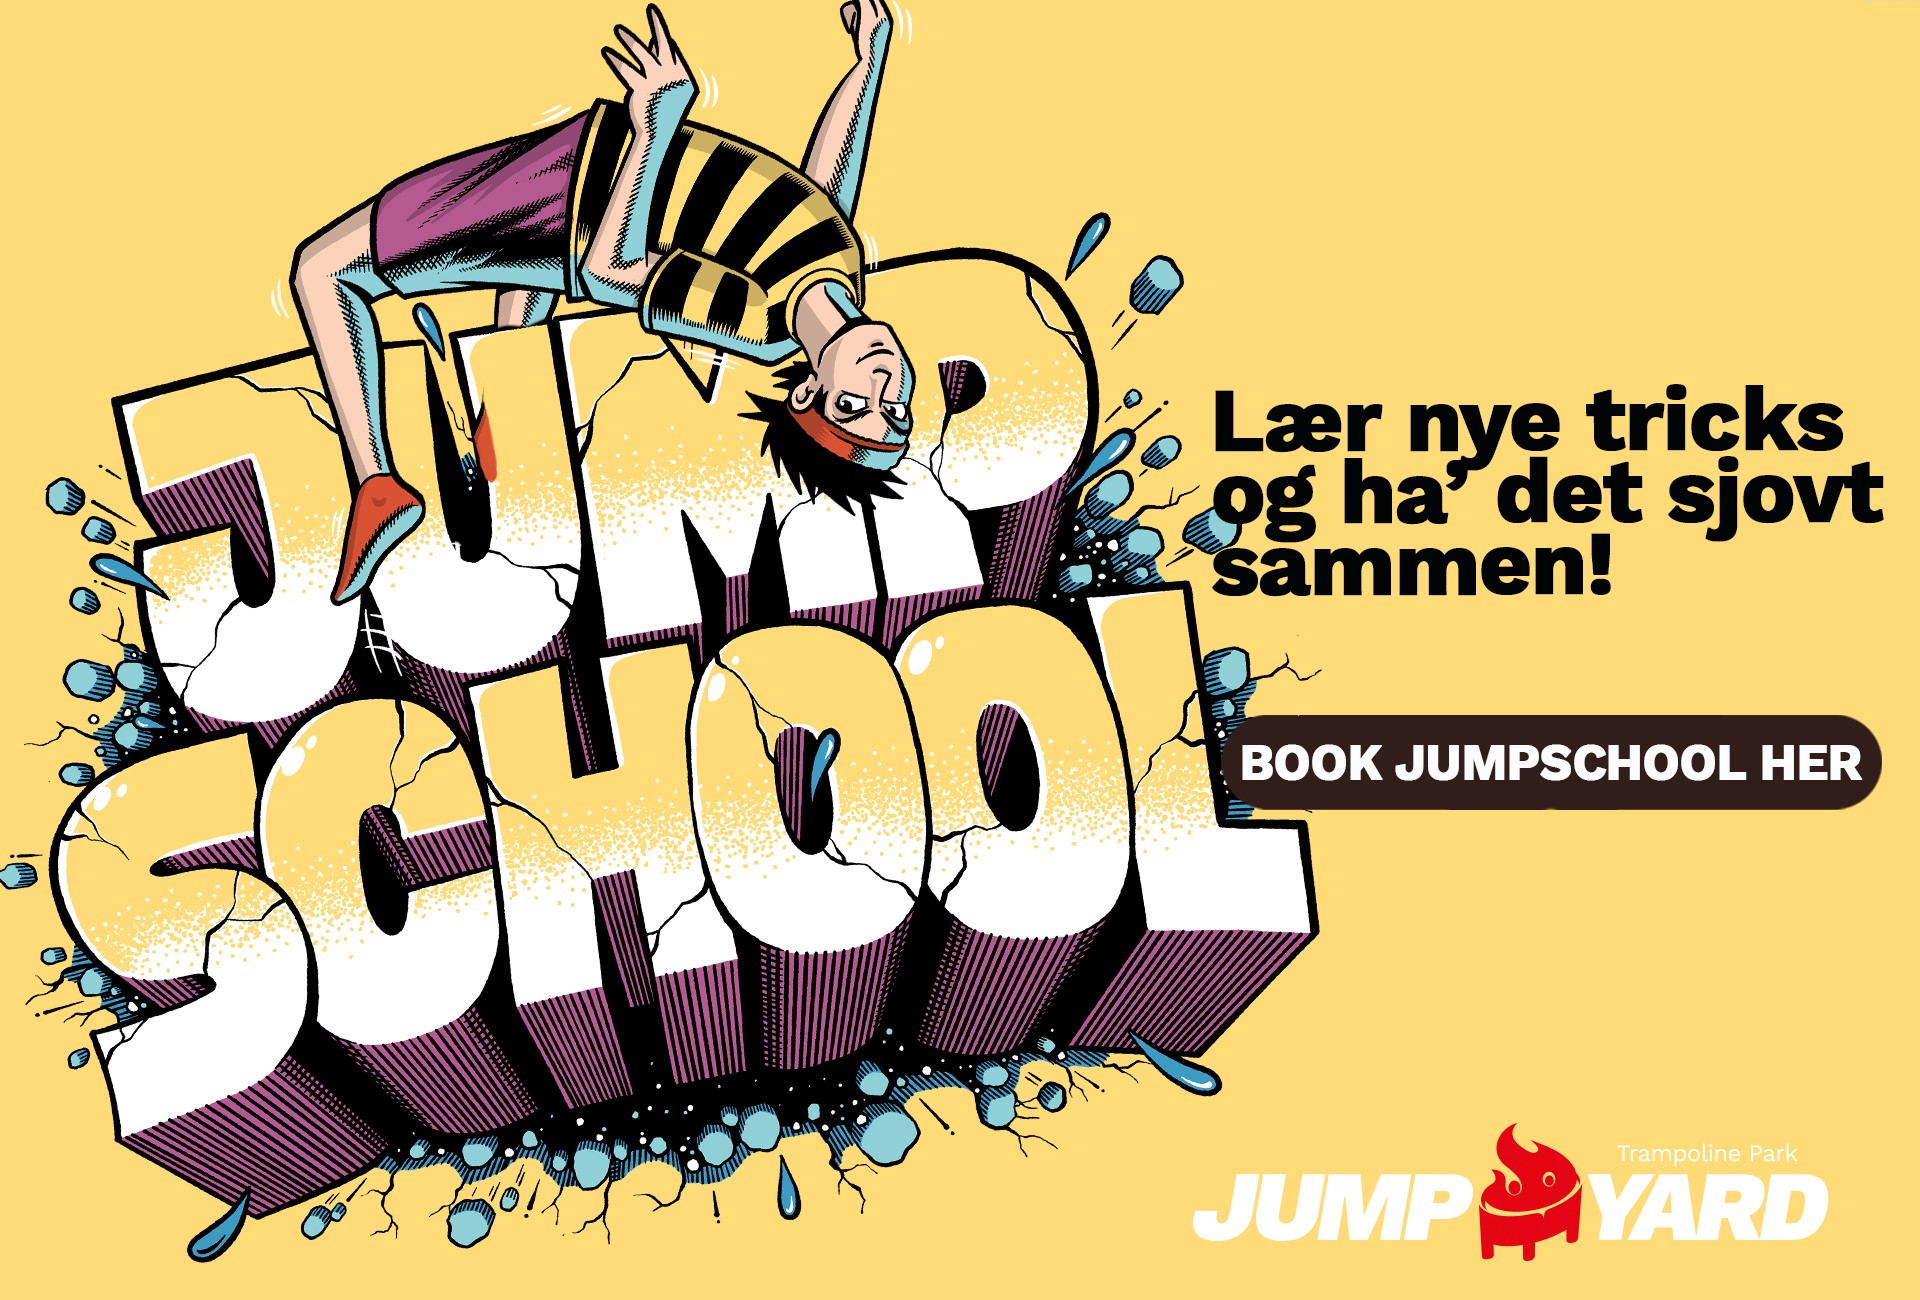 JumpSchool